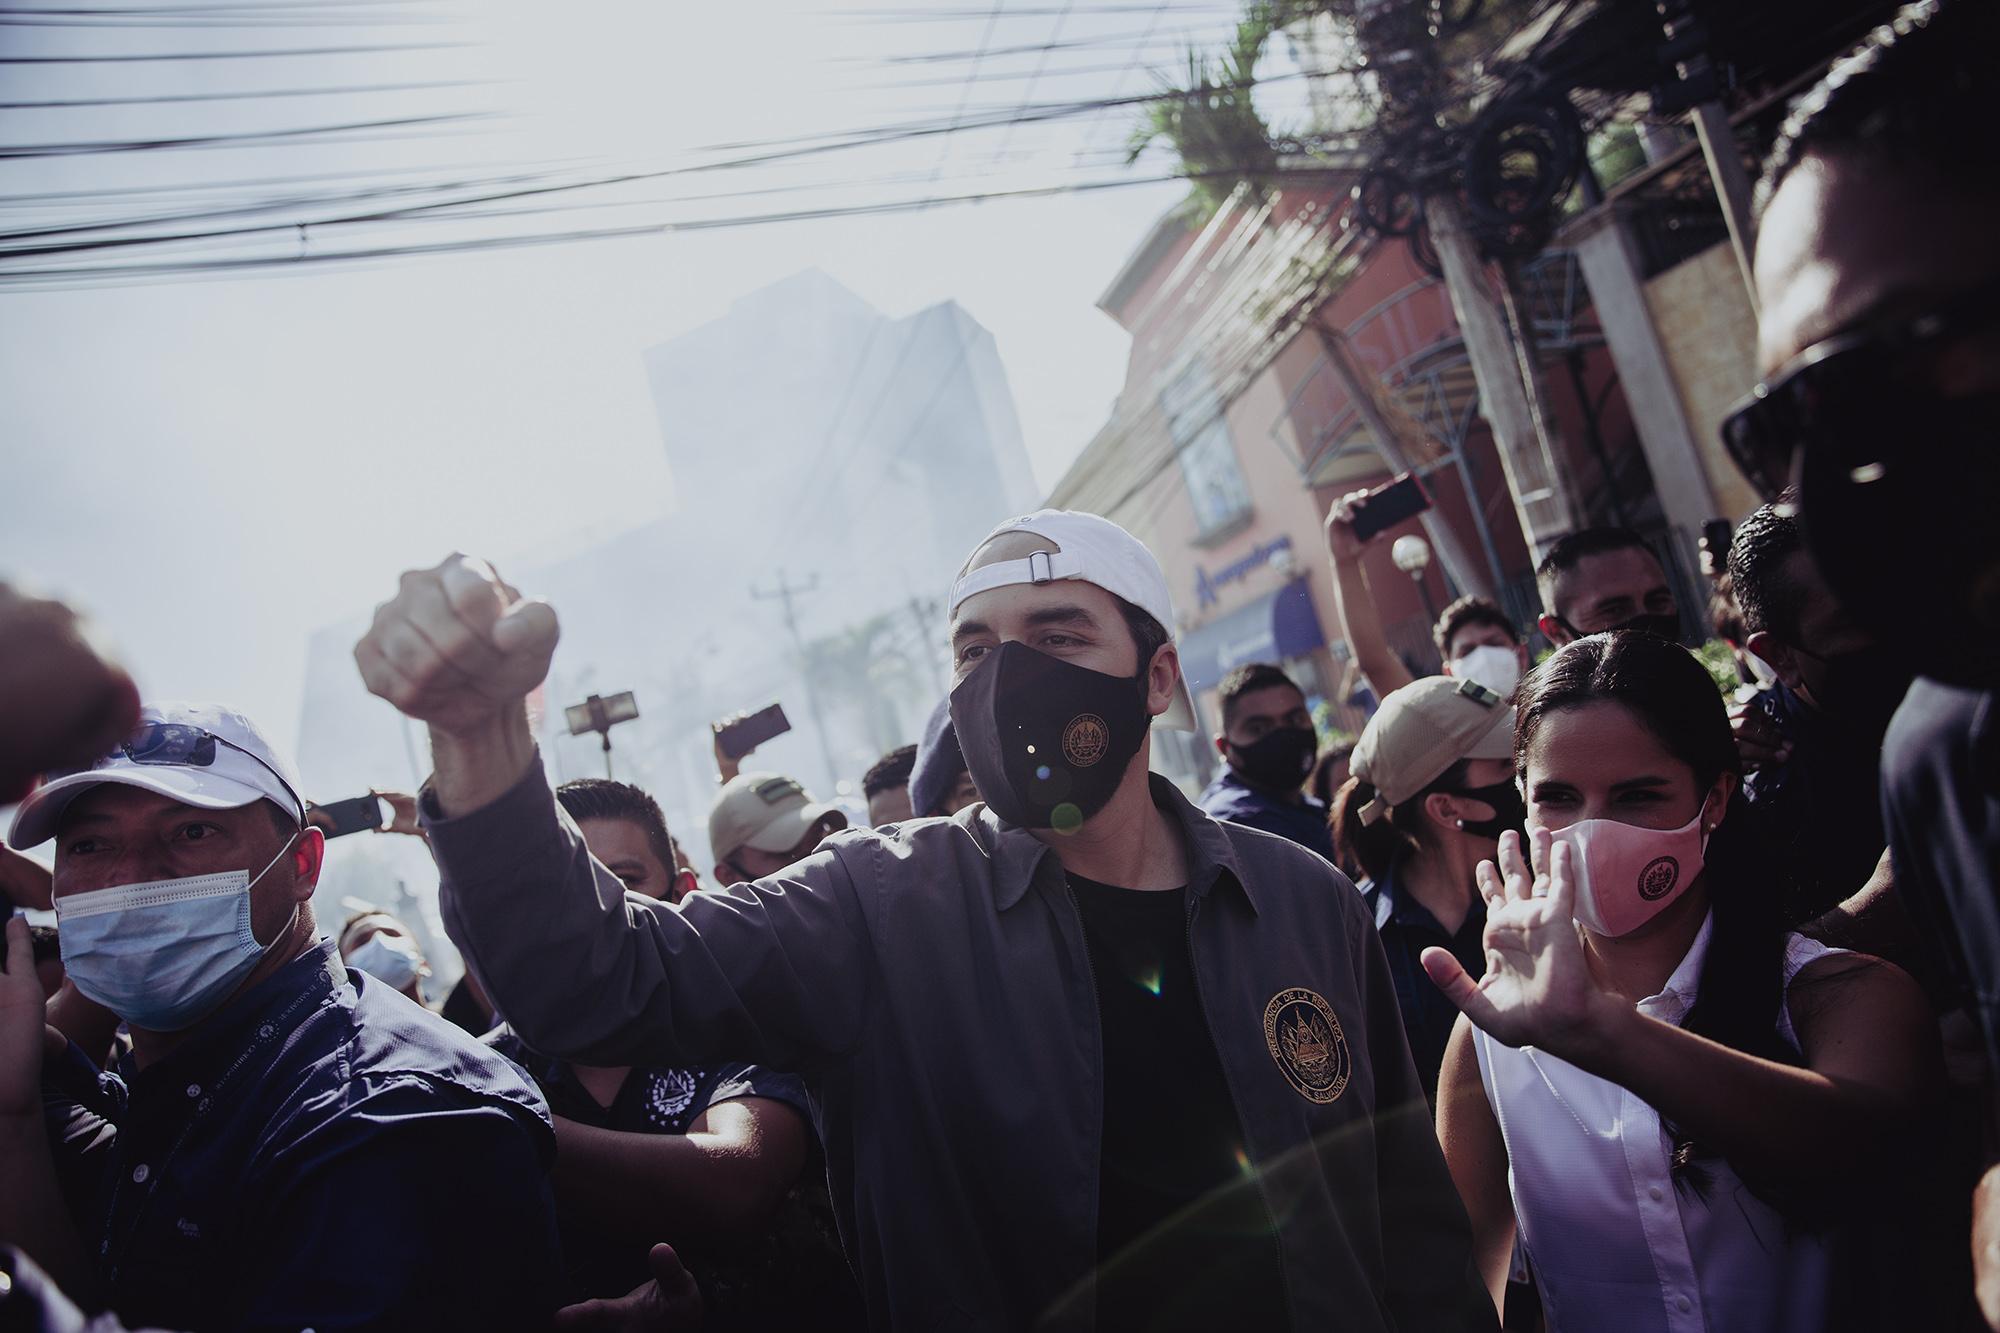 El presidente de El Salvador, Nayib Bukele, llegó al centro de votación Bulevar del Hipódromo para ejercer su voto, en el lugar lo esperaban decenas de simpatizantes que lo deseaban ver y saludar. Foto de El Faro: Carlos Barrera